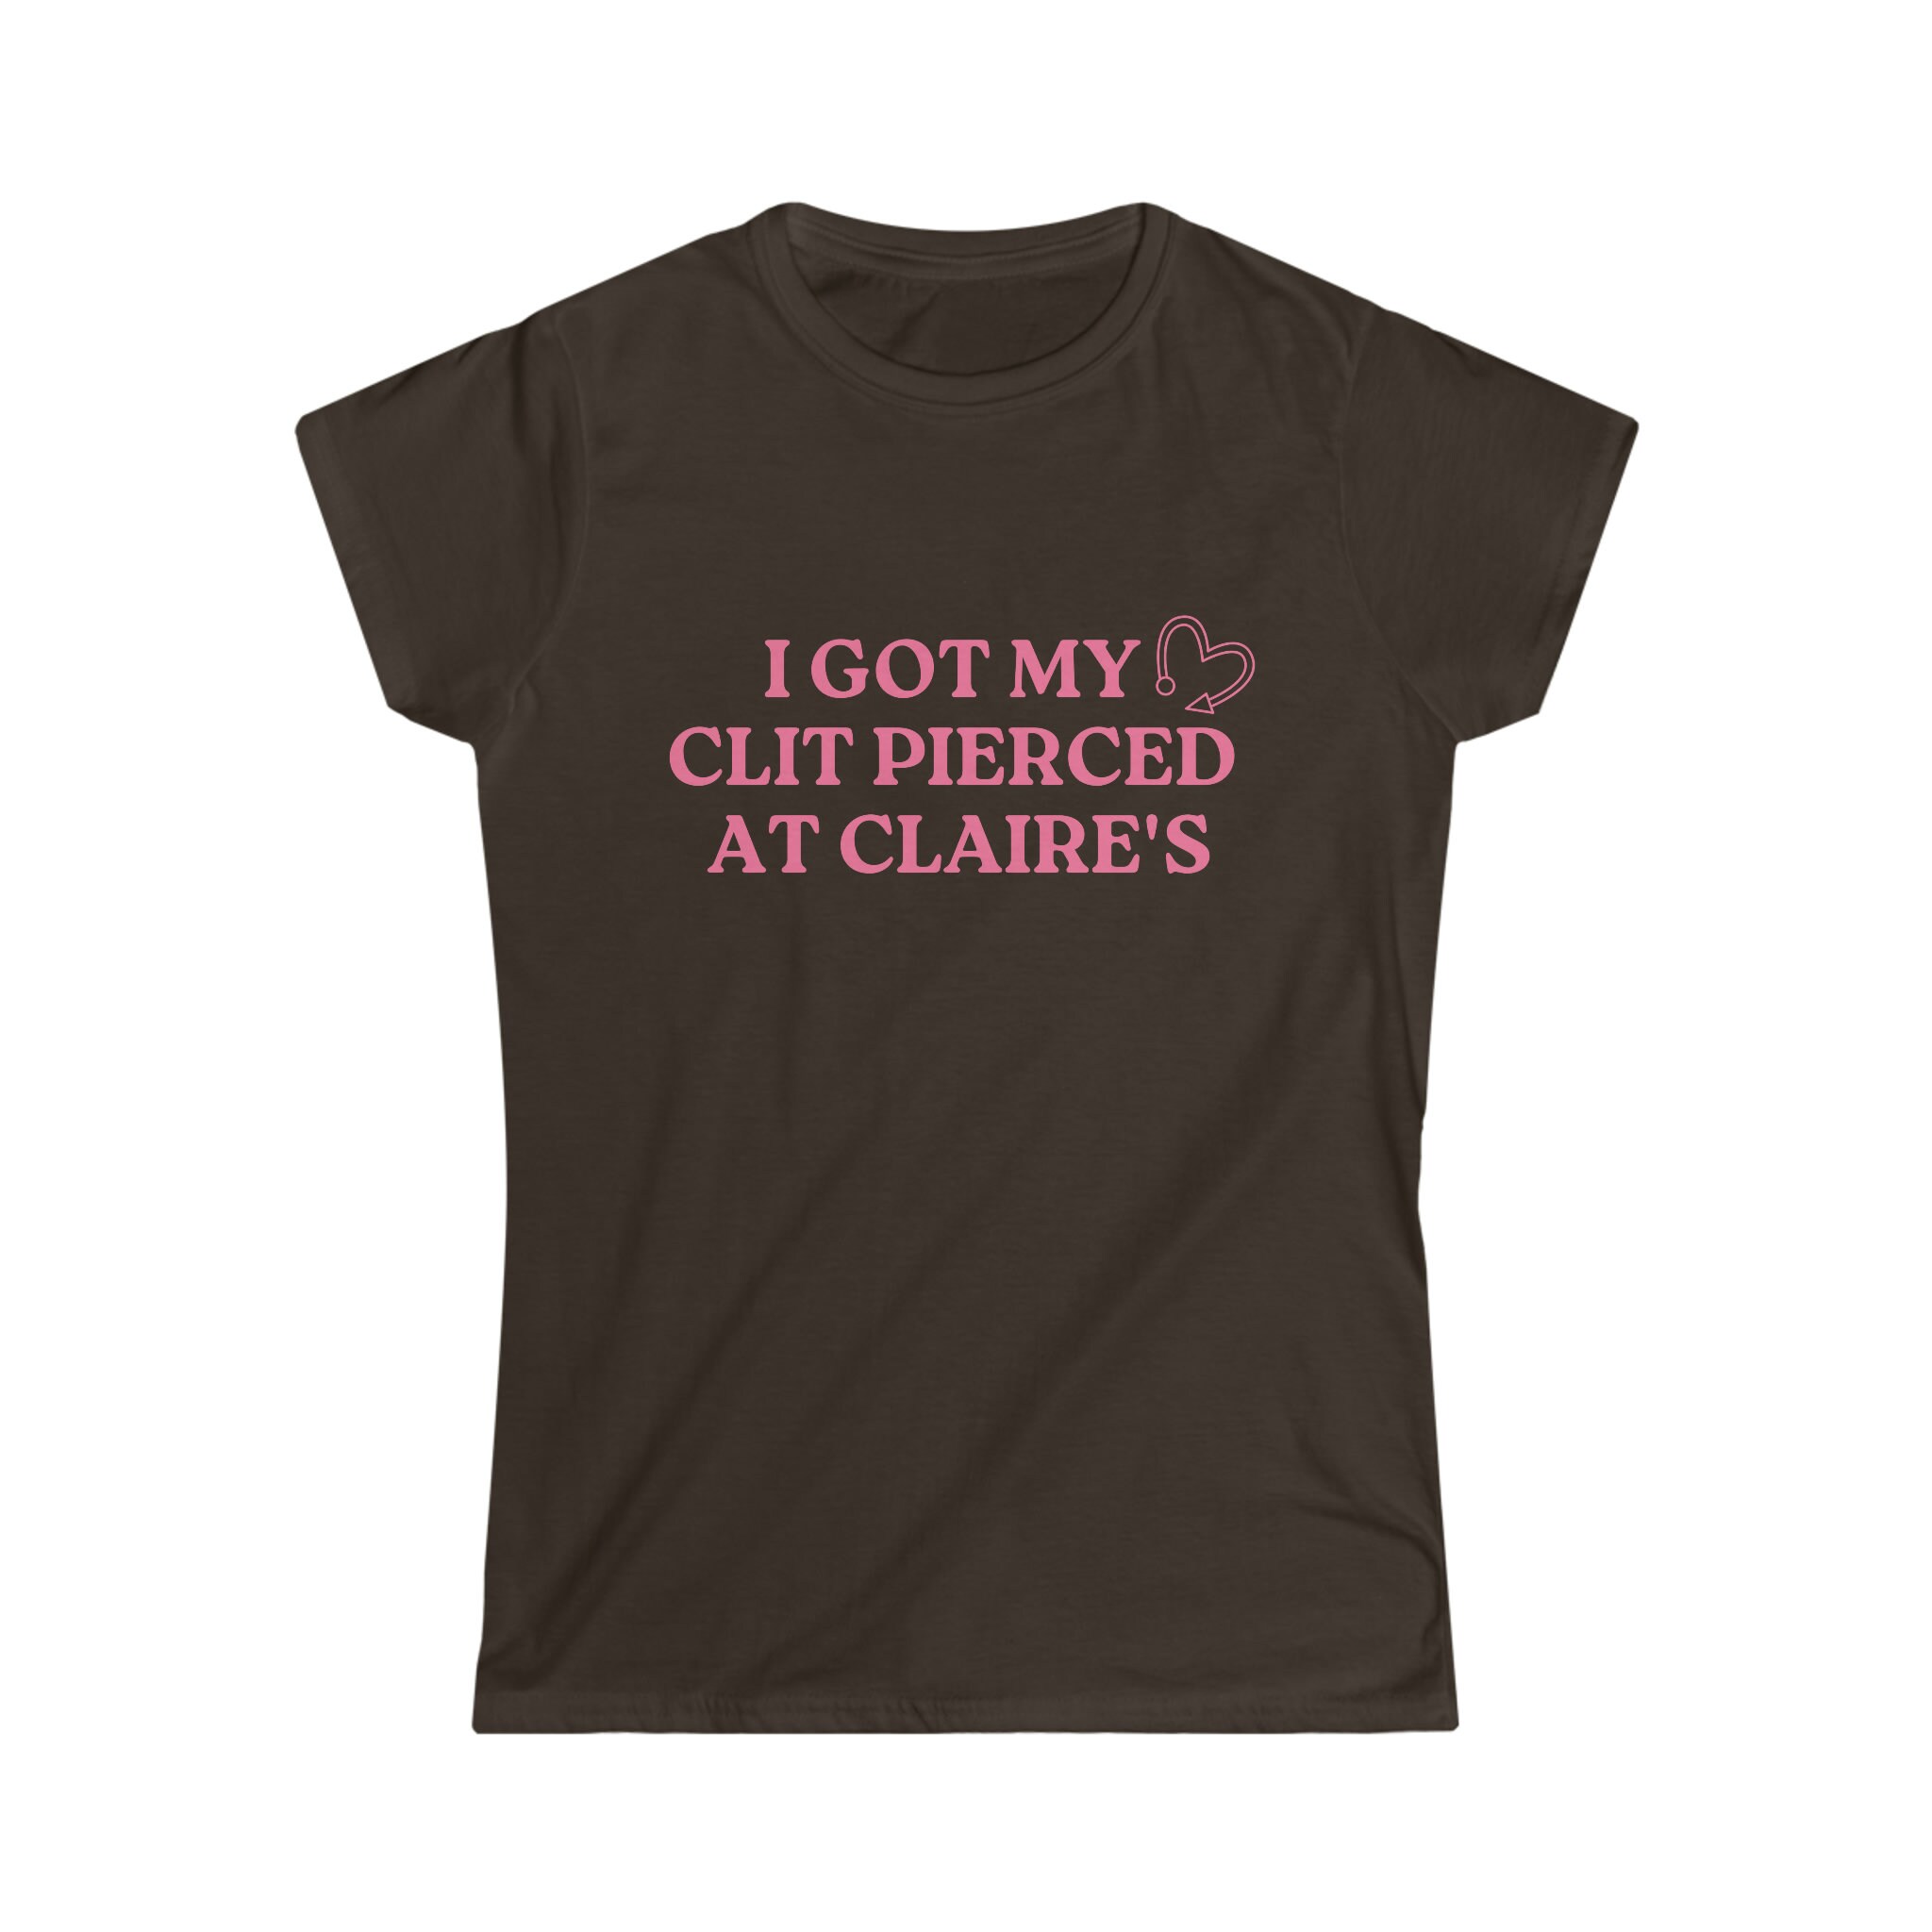 Claires clit.piercing